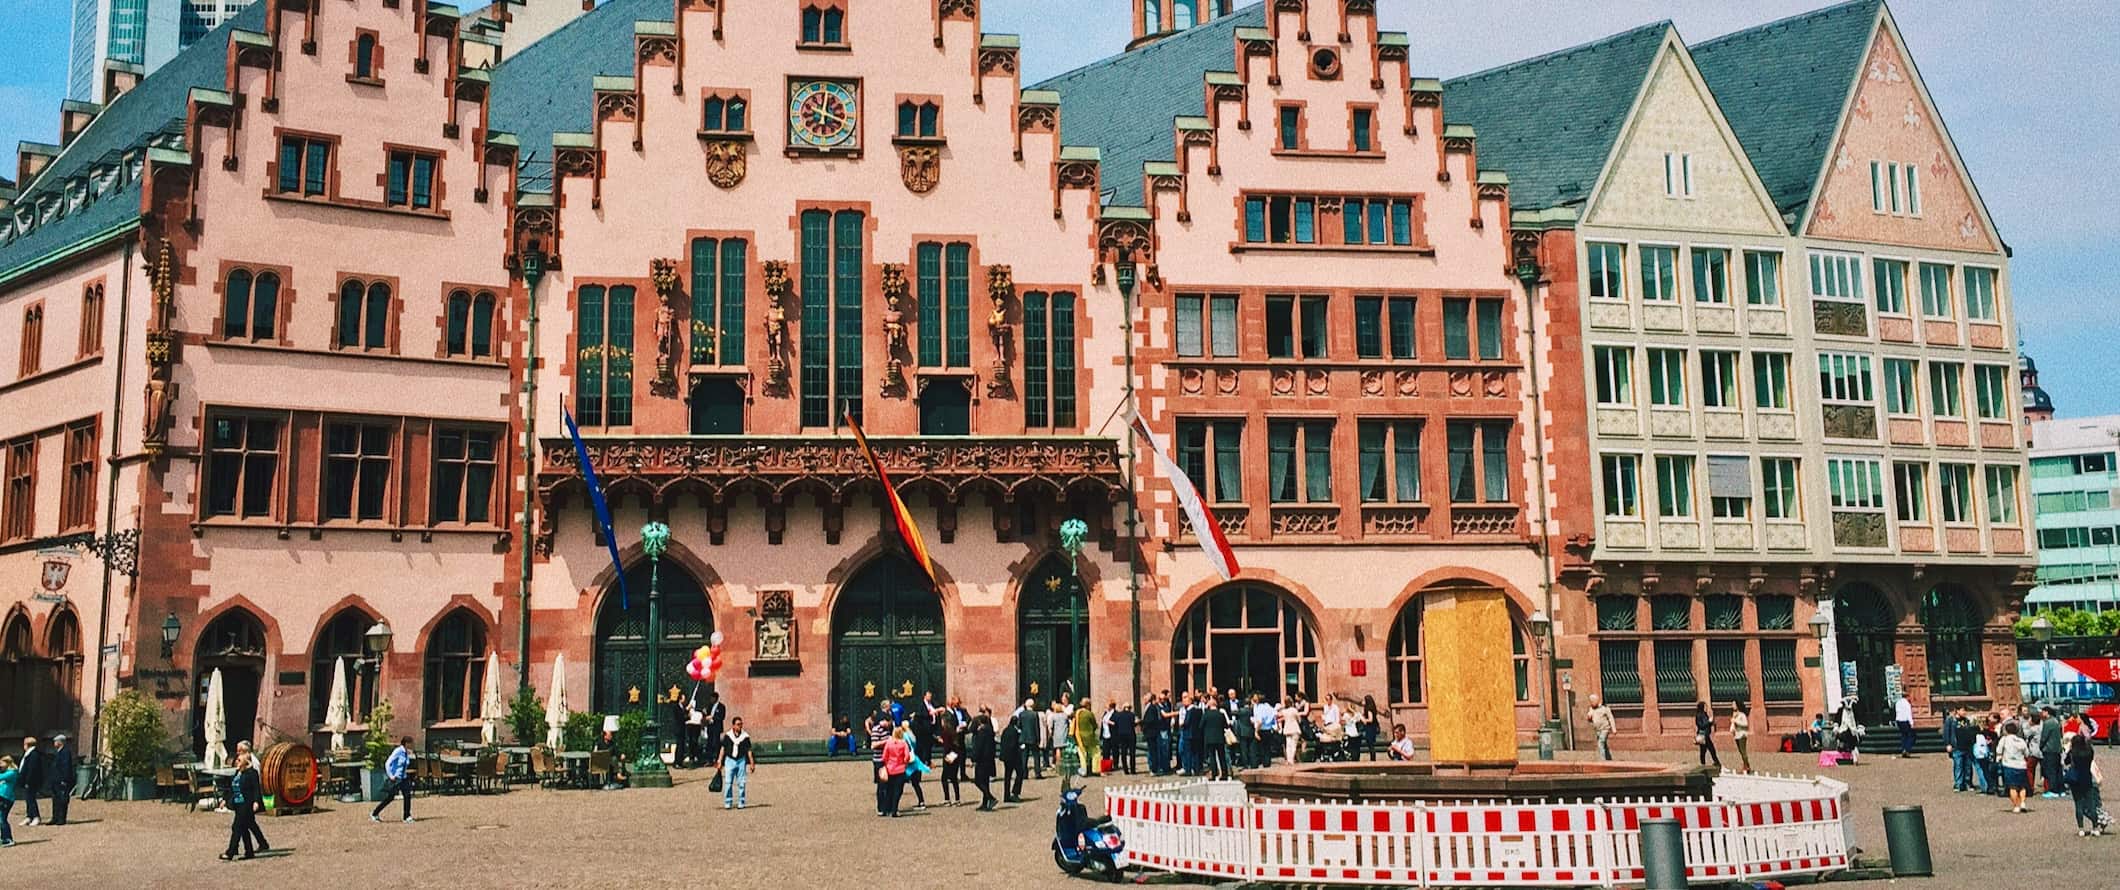 Edifícios antigos coloridos numa das praças de Frankfurt, Alemanha